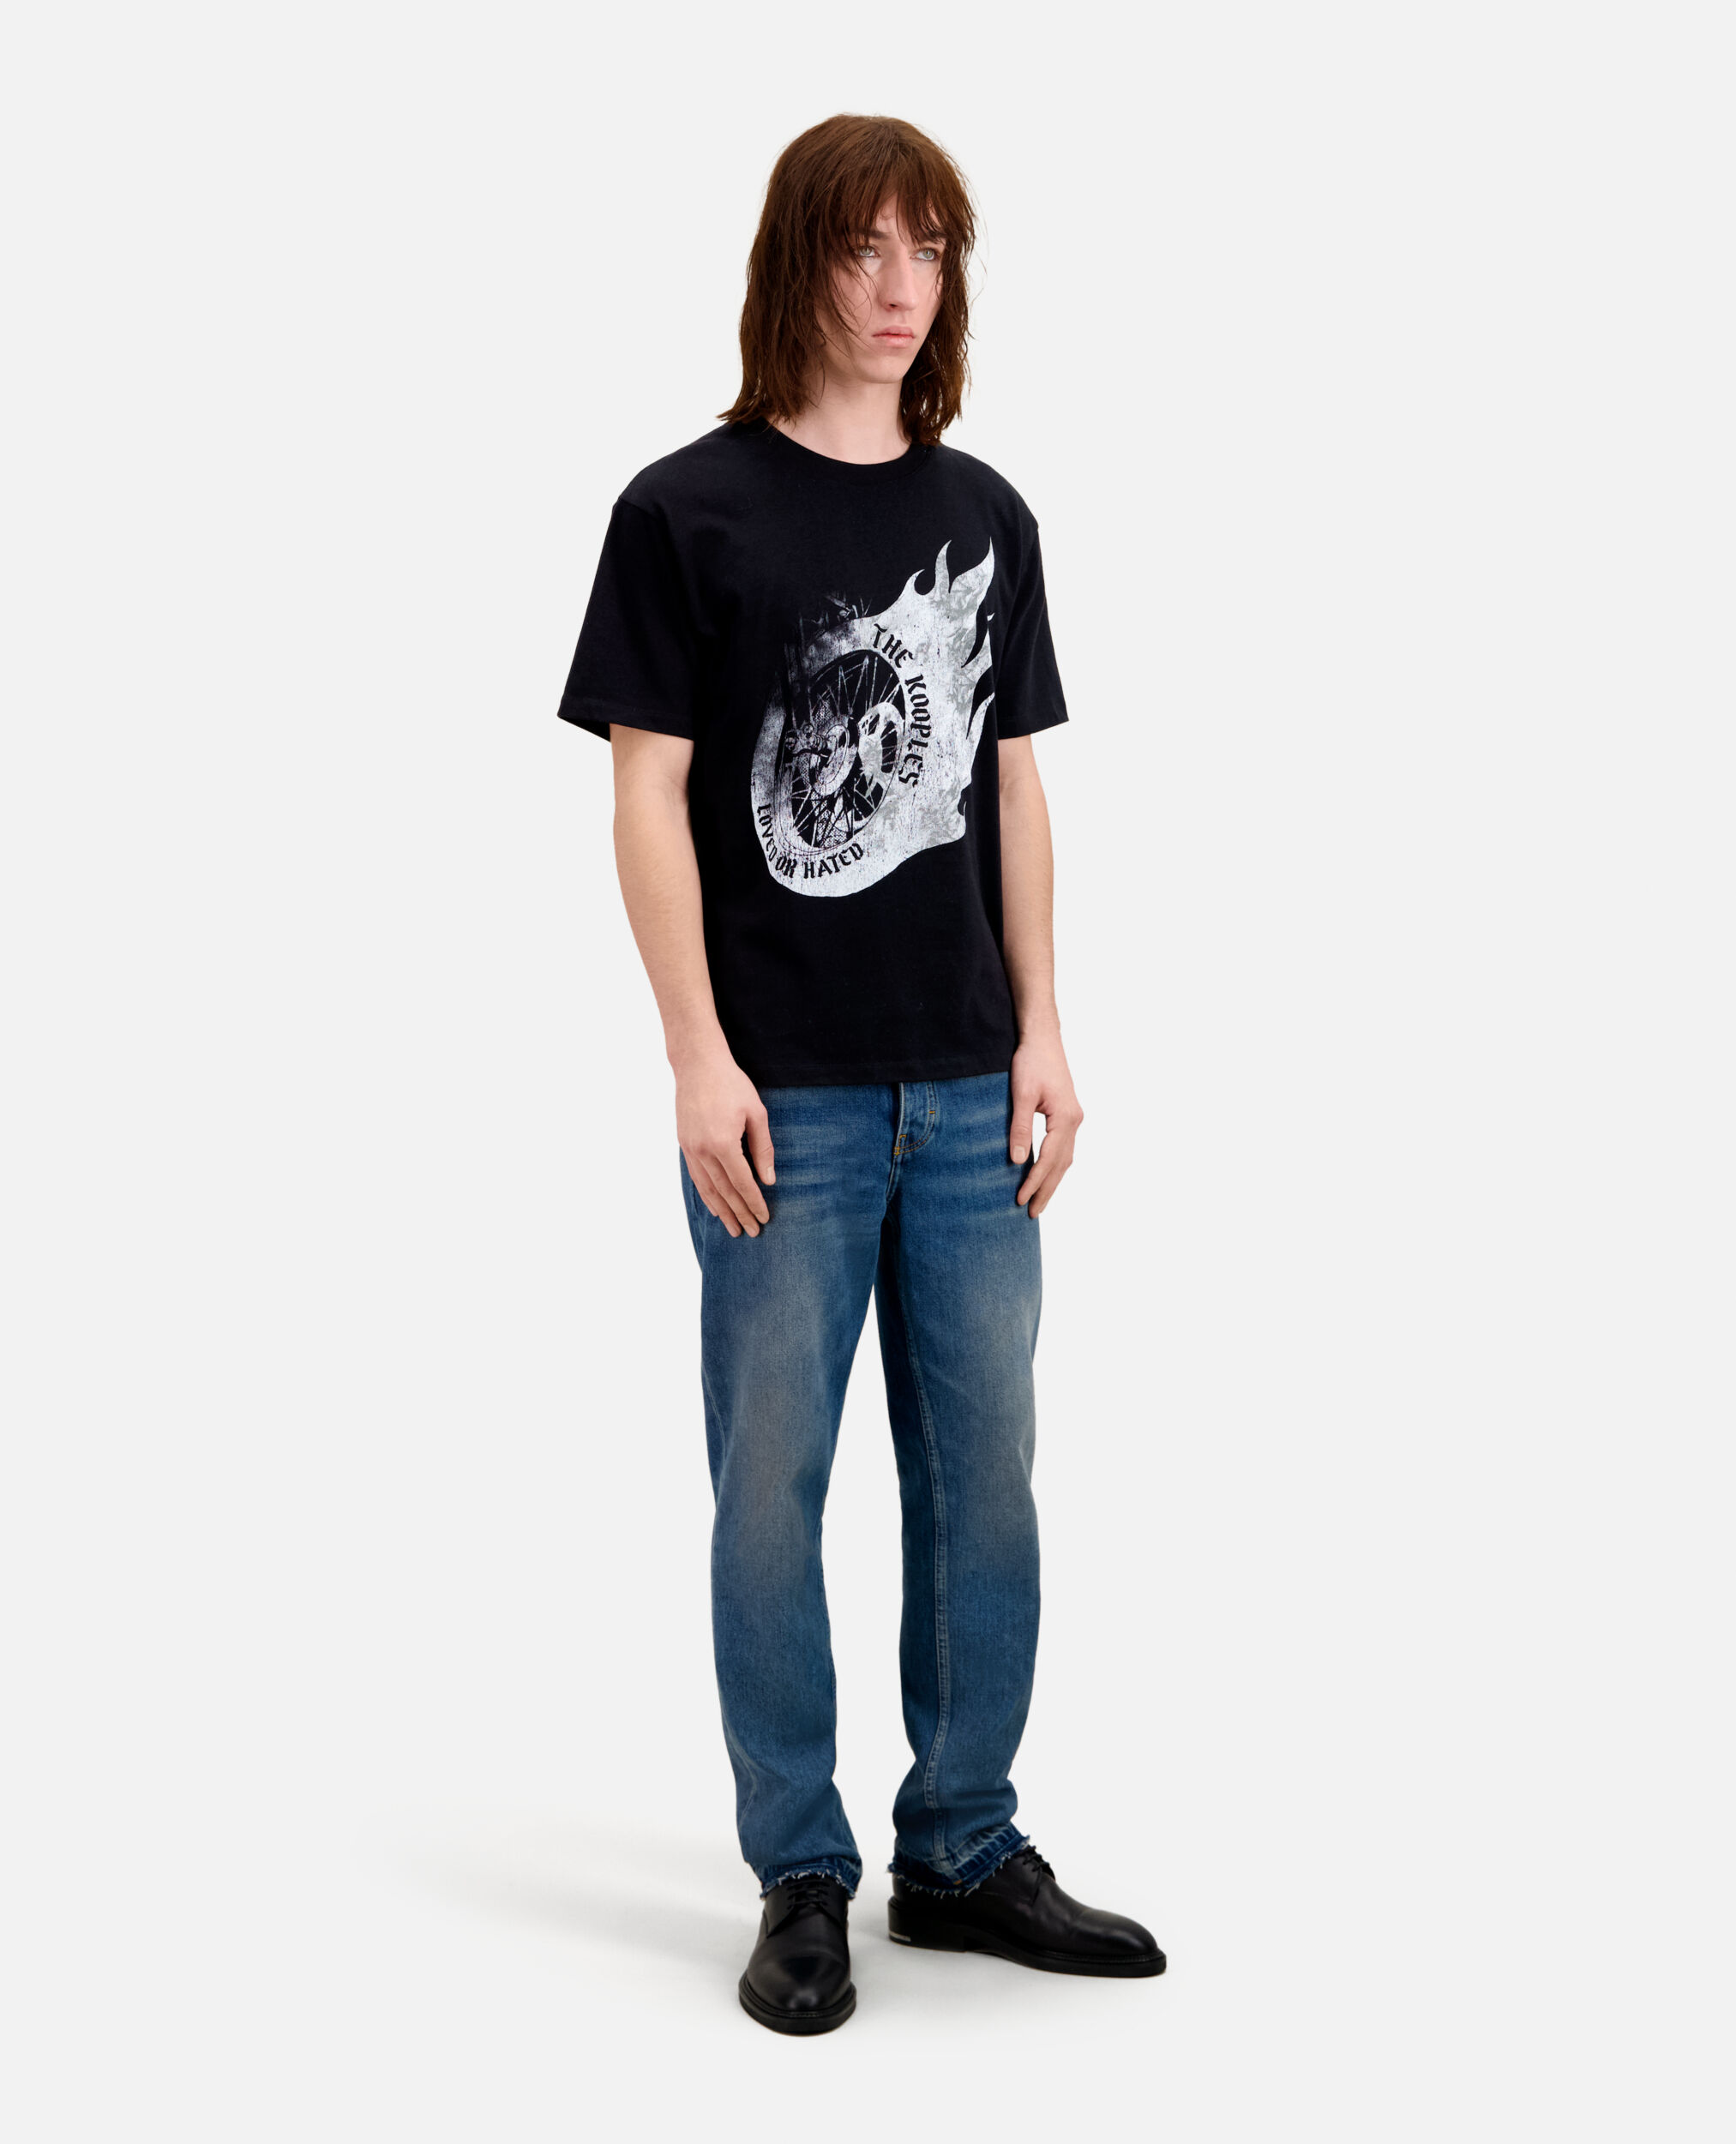 T-shirt Homme noir avec sérigraphie Flaming wheel, BLACK, hi-res image number null